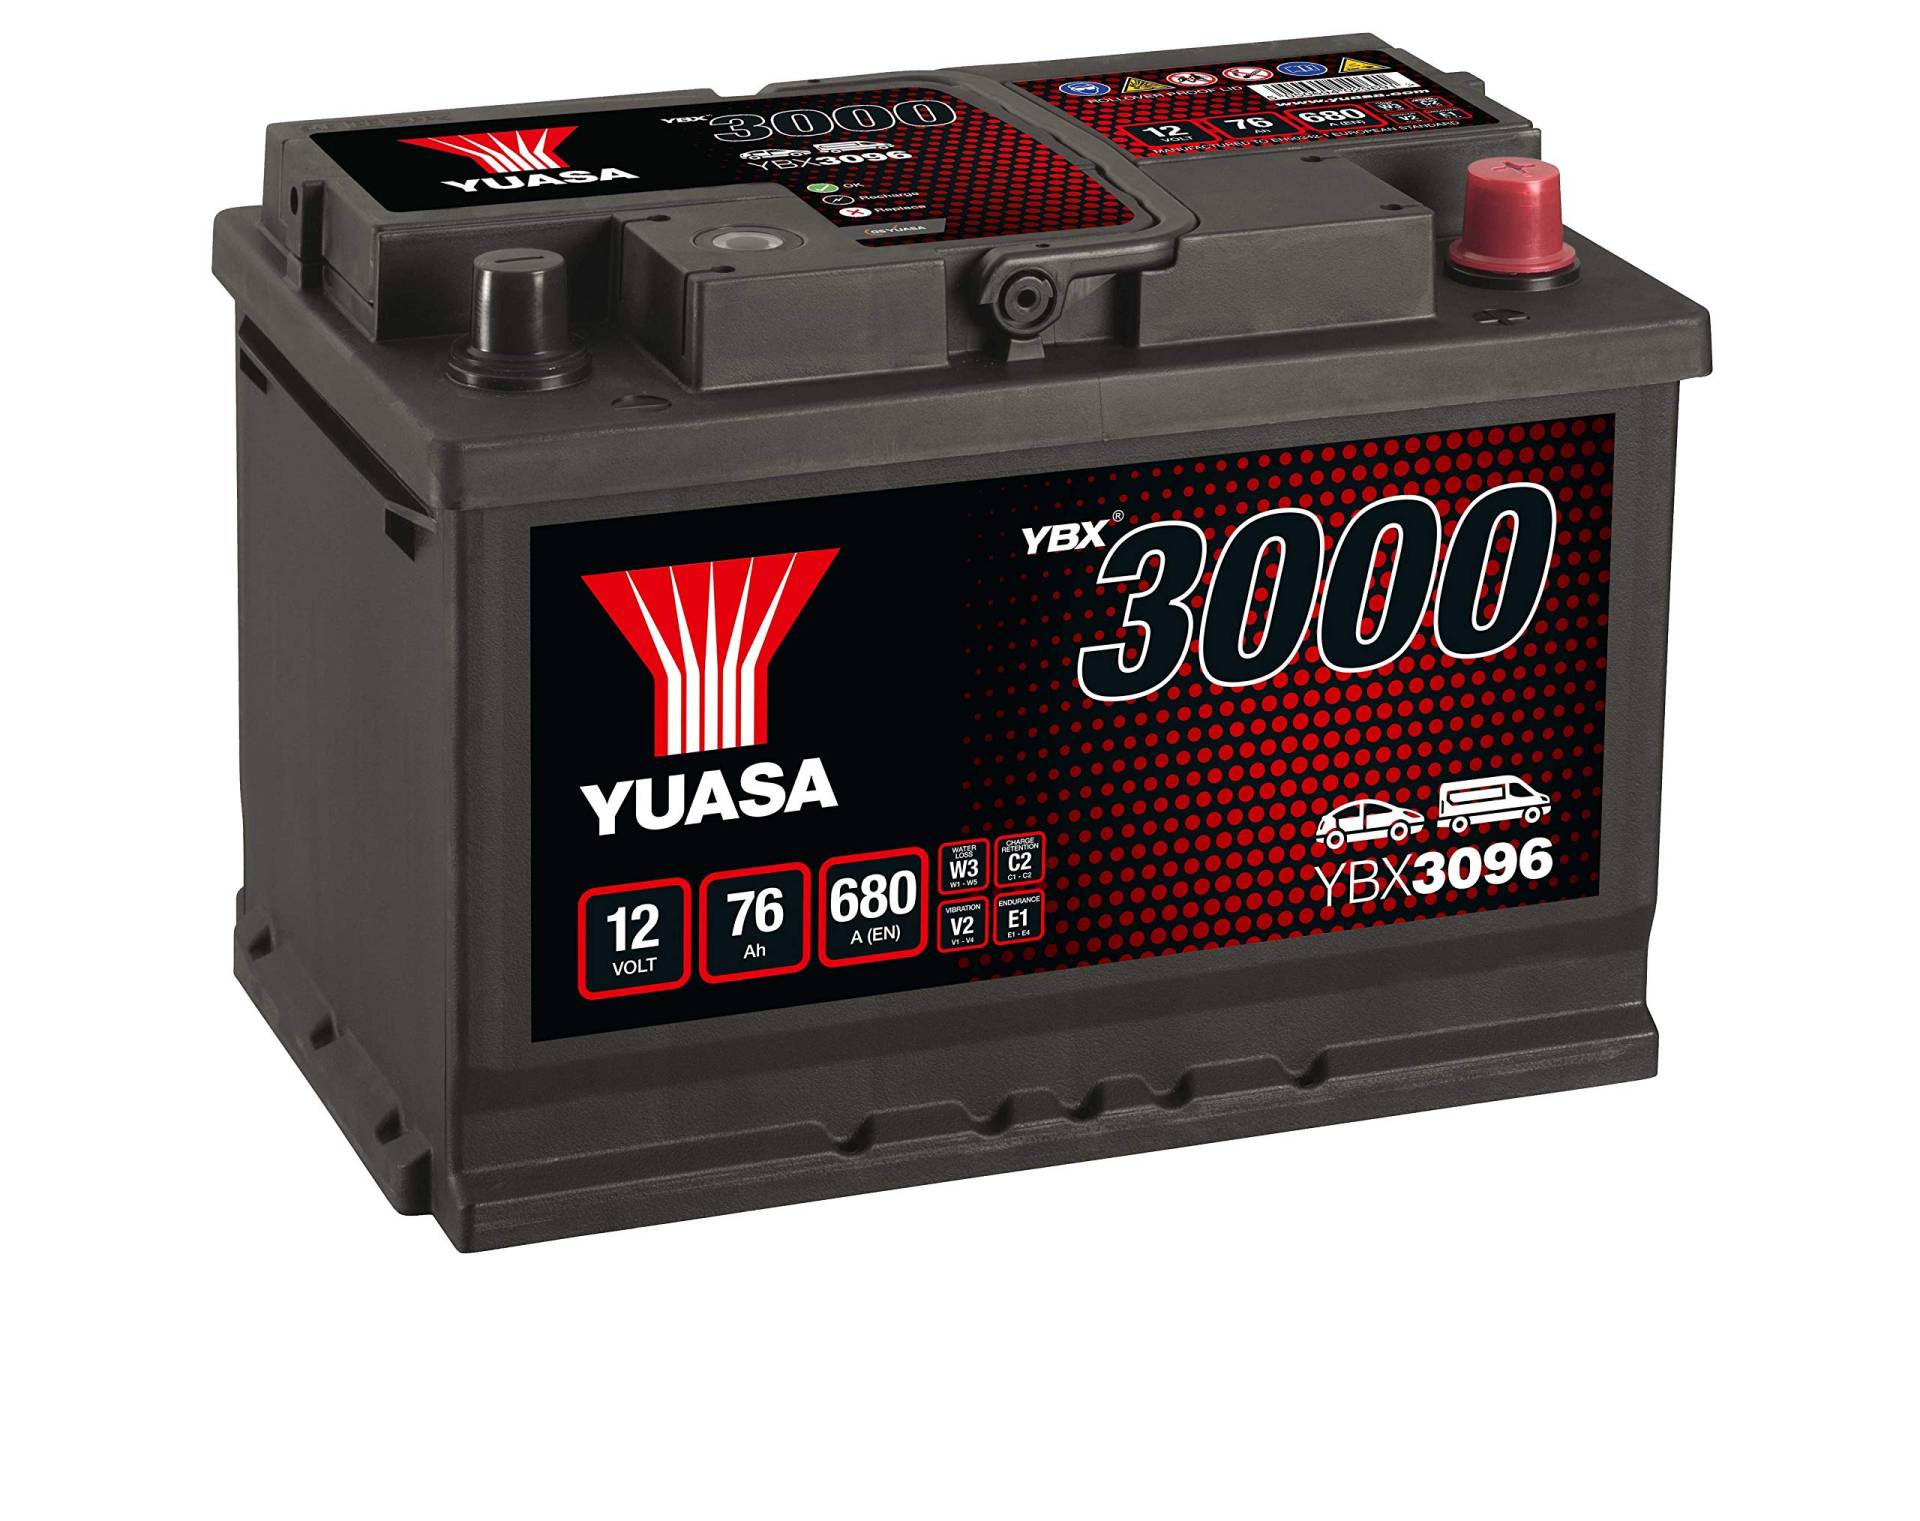 YUASA YBX3096 12 V/75 Ah/650 A von Yuasa